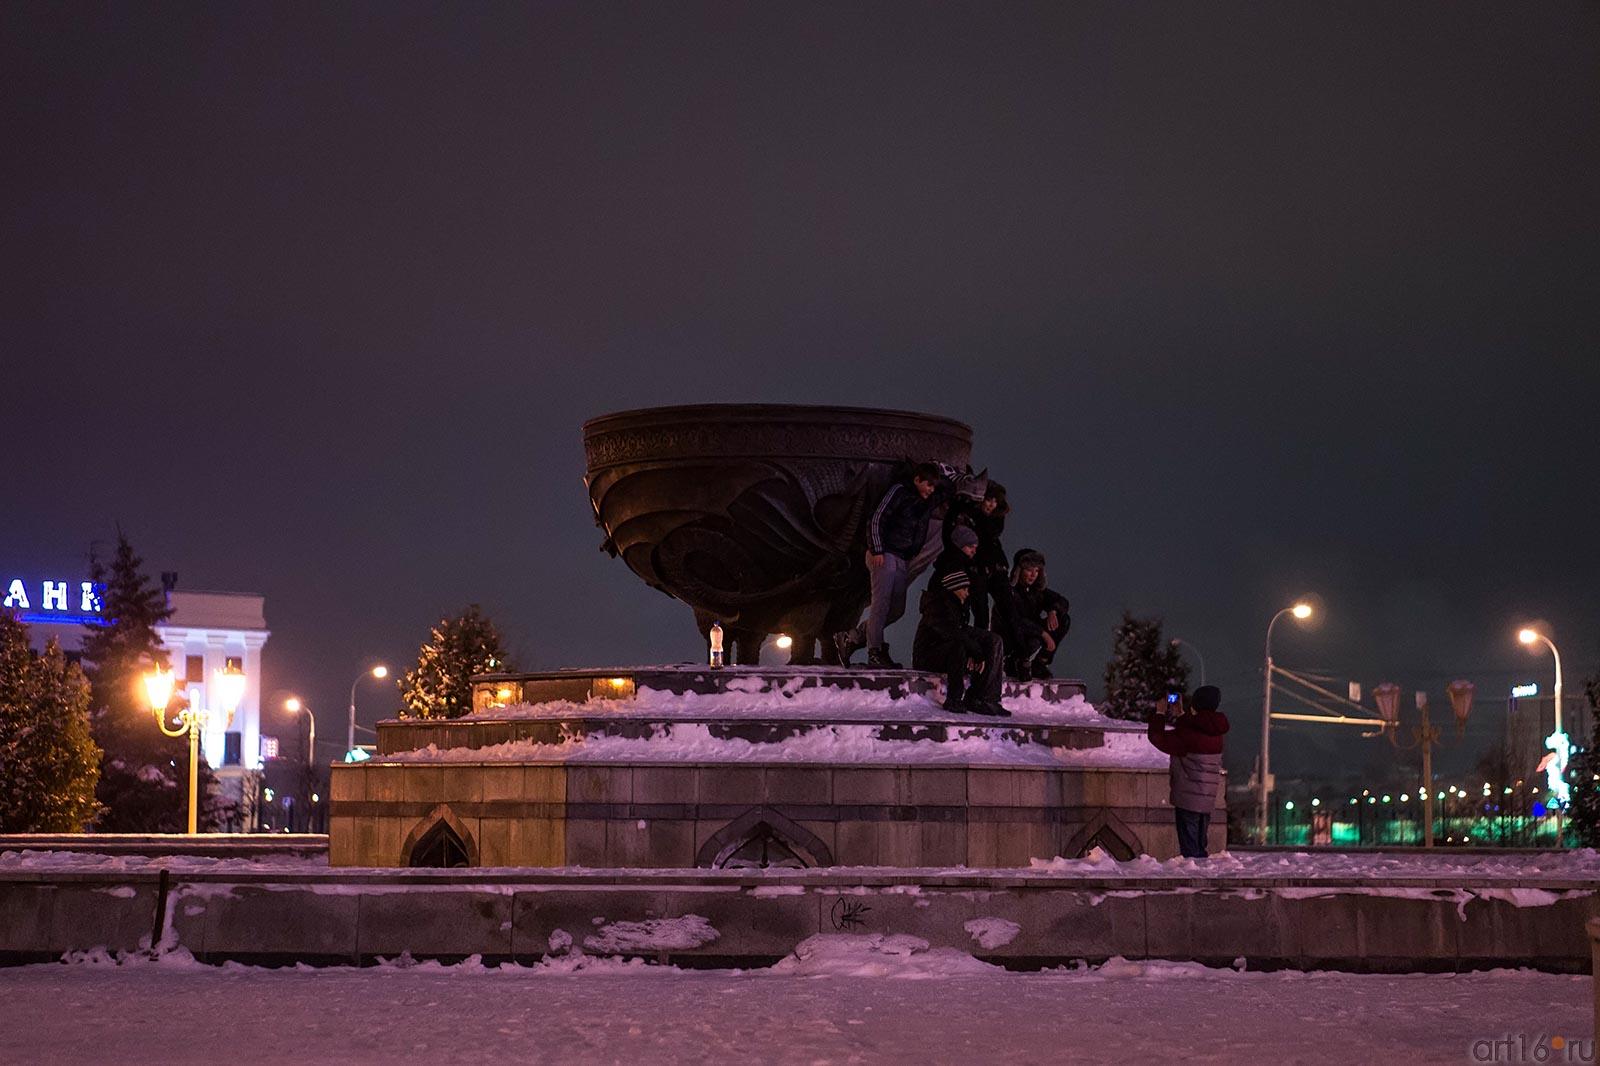 Группа подростков с полторушкой какого-то напитка фотографируется на память около памятника живоглоту::"Старый новый год" , прогулка по Казани